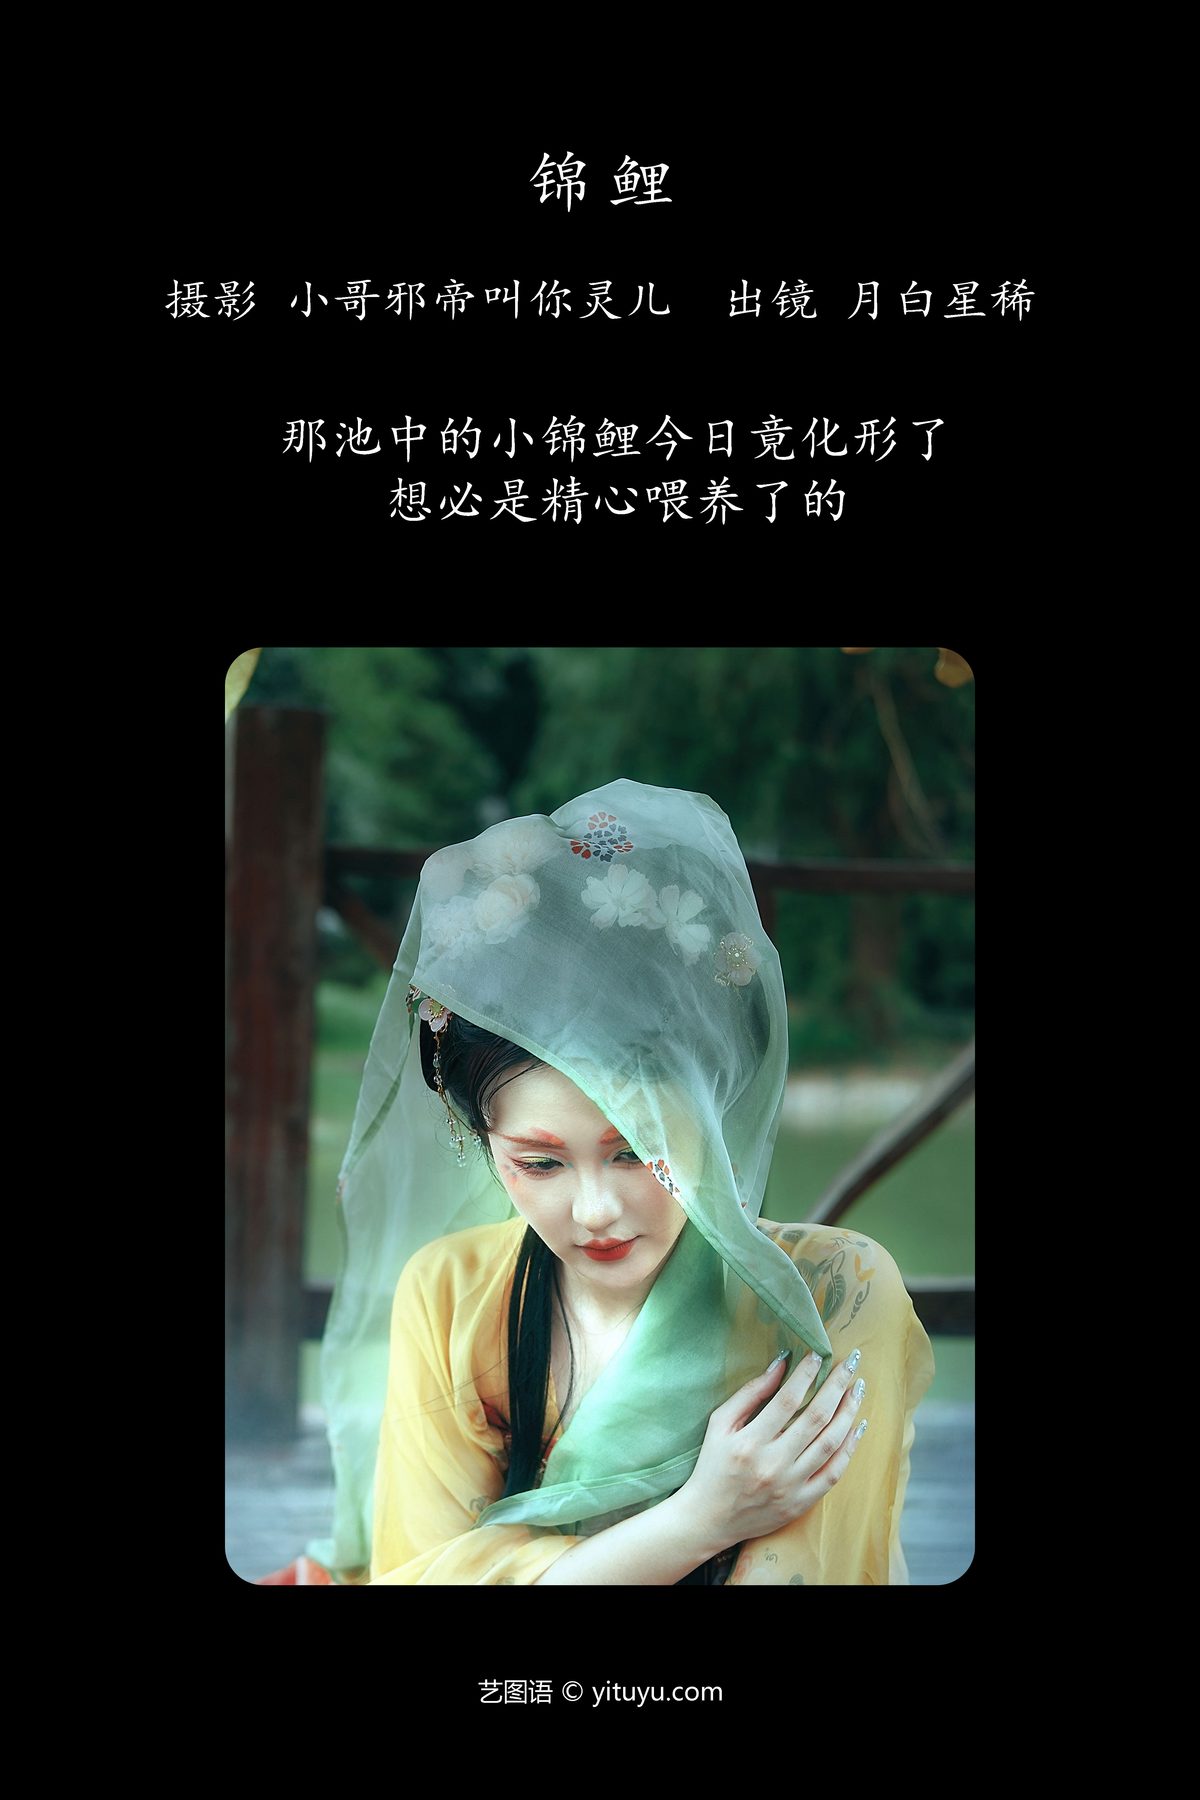 YiTuYu艺图语 Vol 5143 Yue Bai Xing Xi 0002 2181824230.jpg